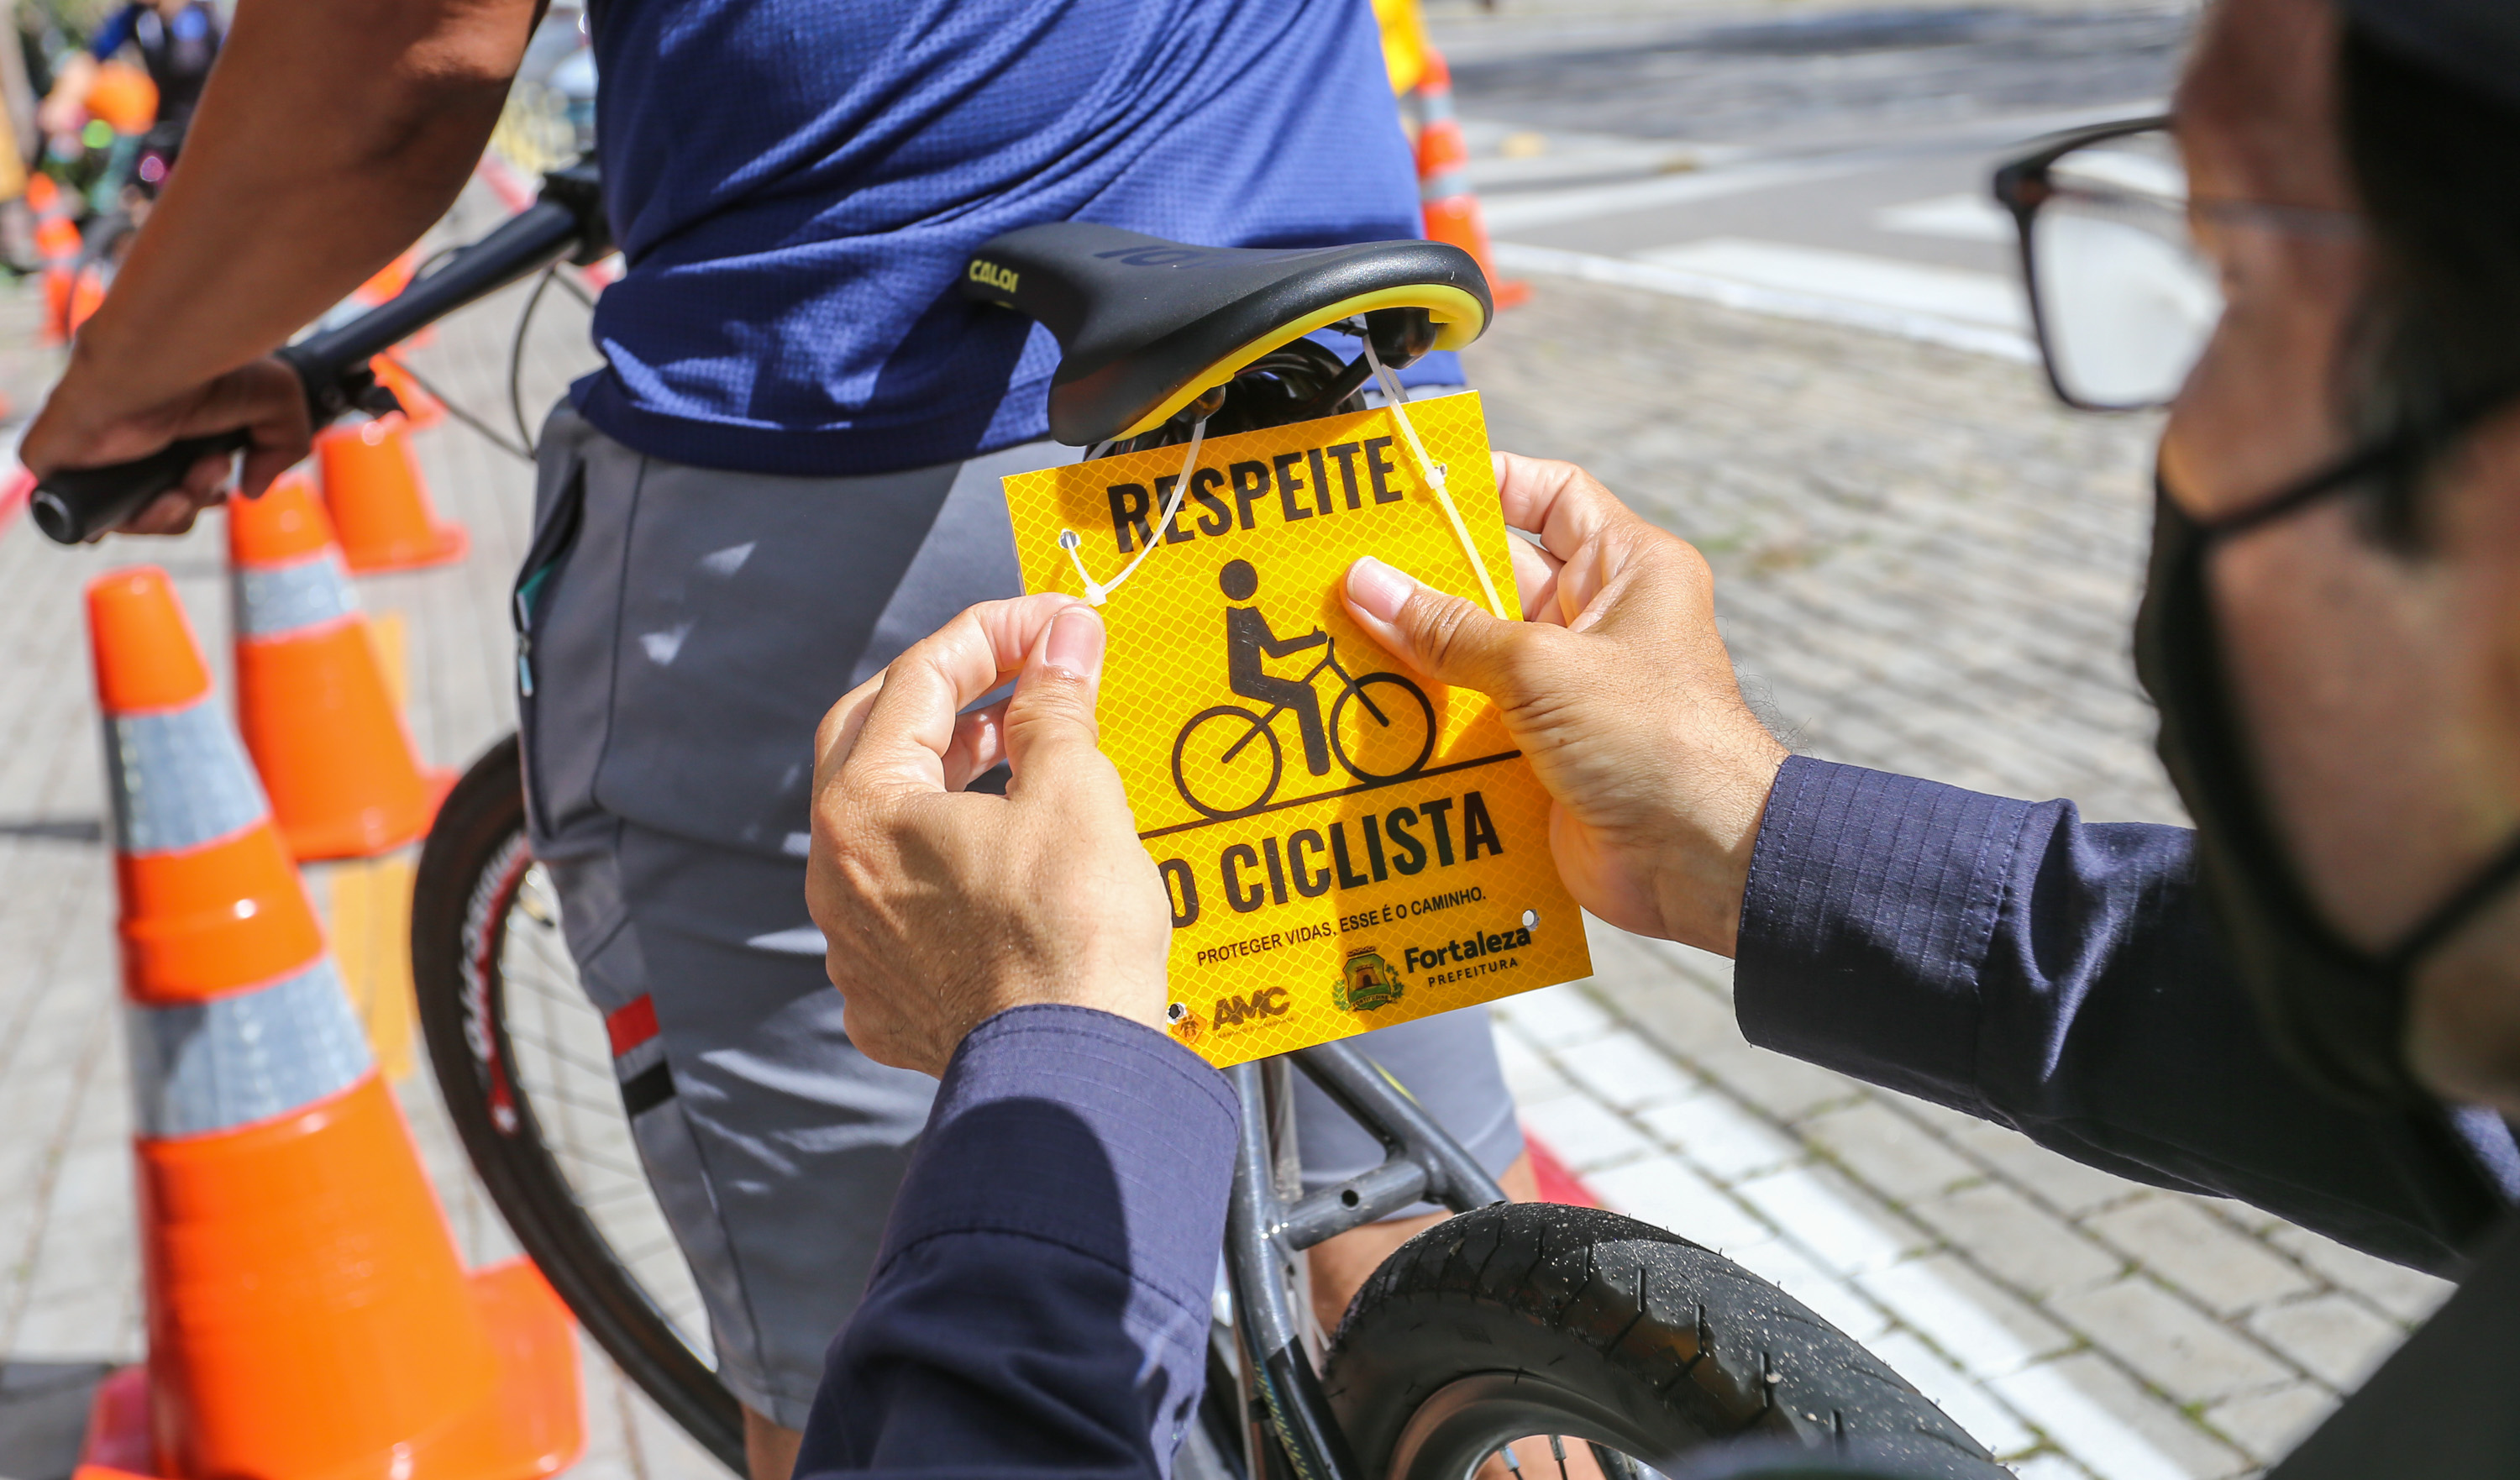 placa com a frase respeite o ciclista é coloca atrás do selim de uma bicicleta